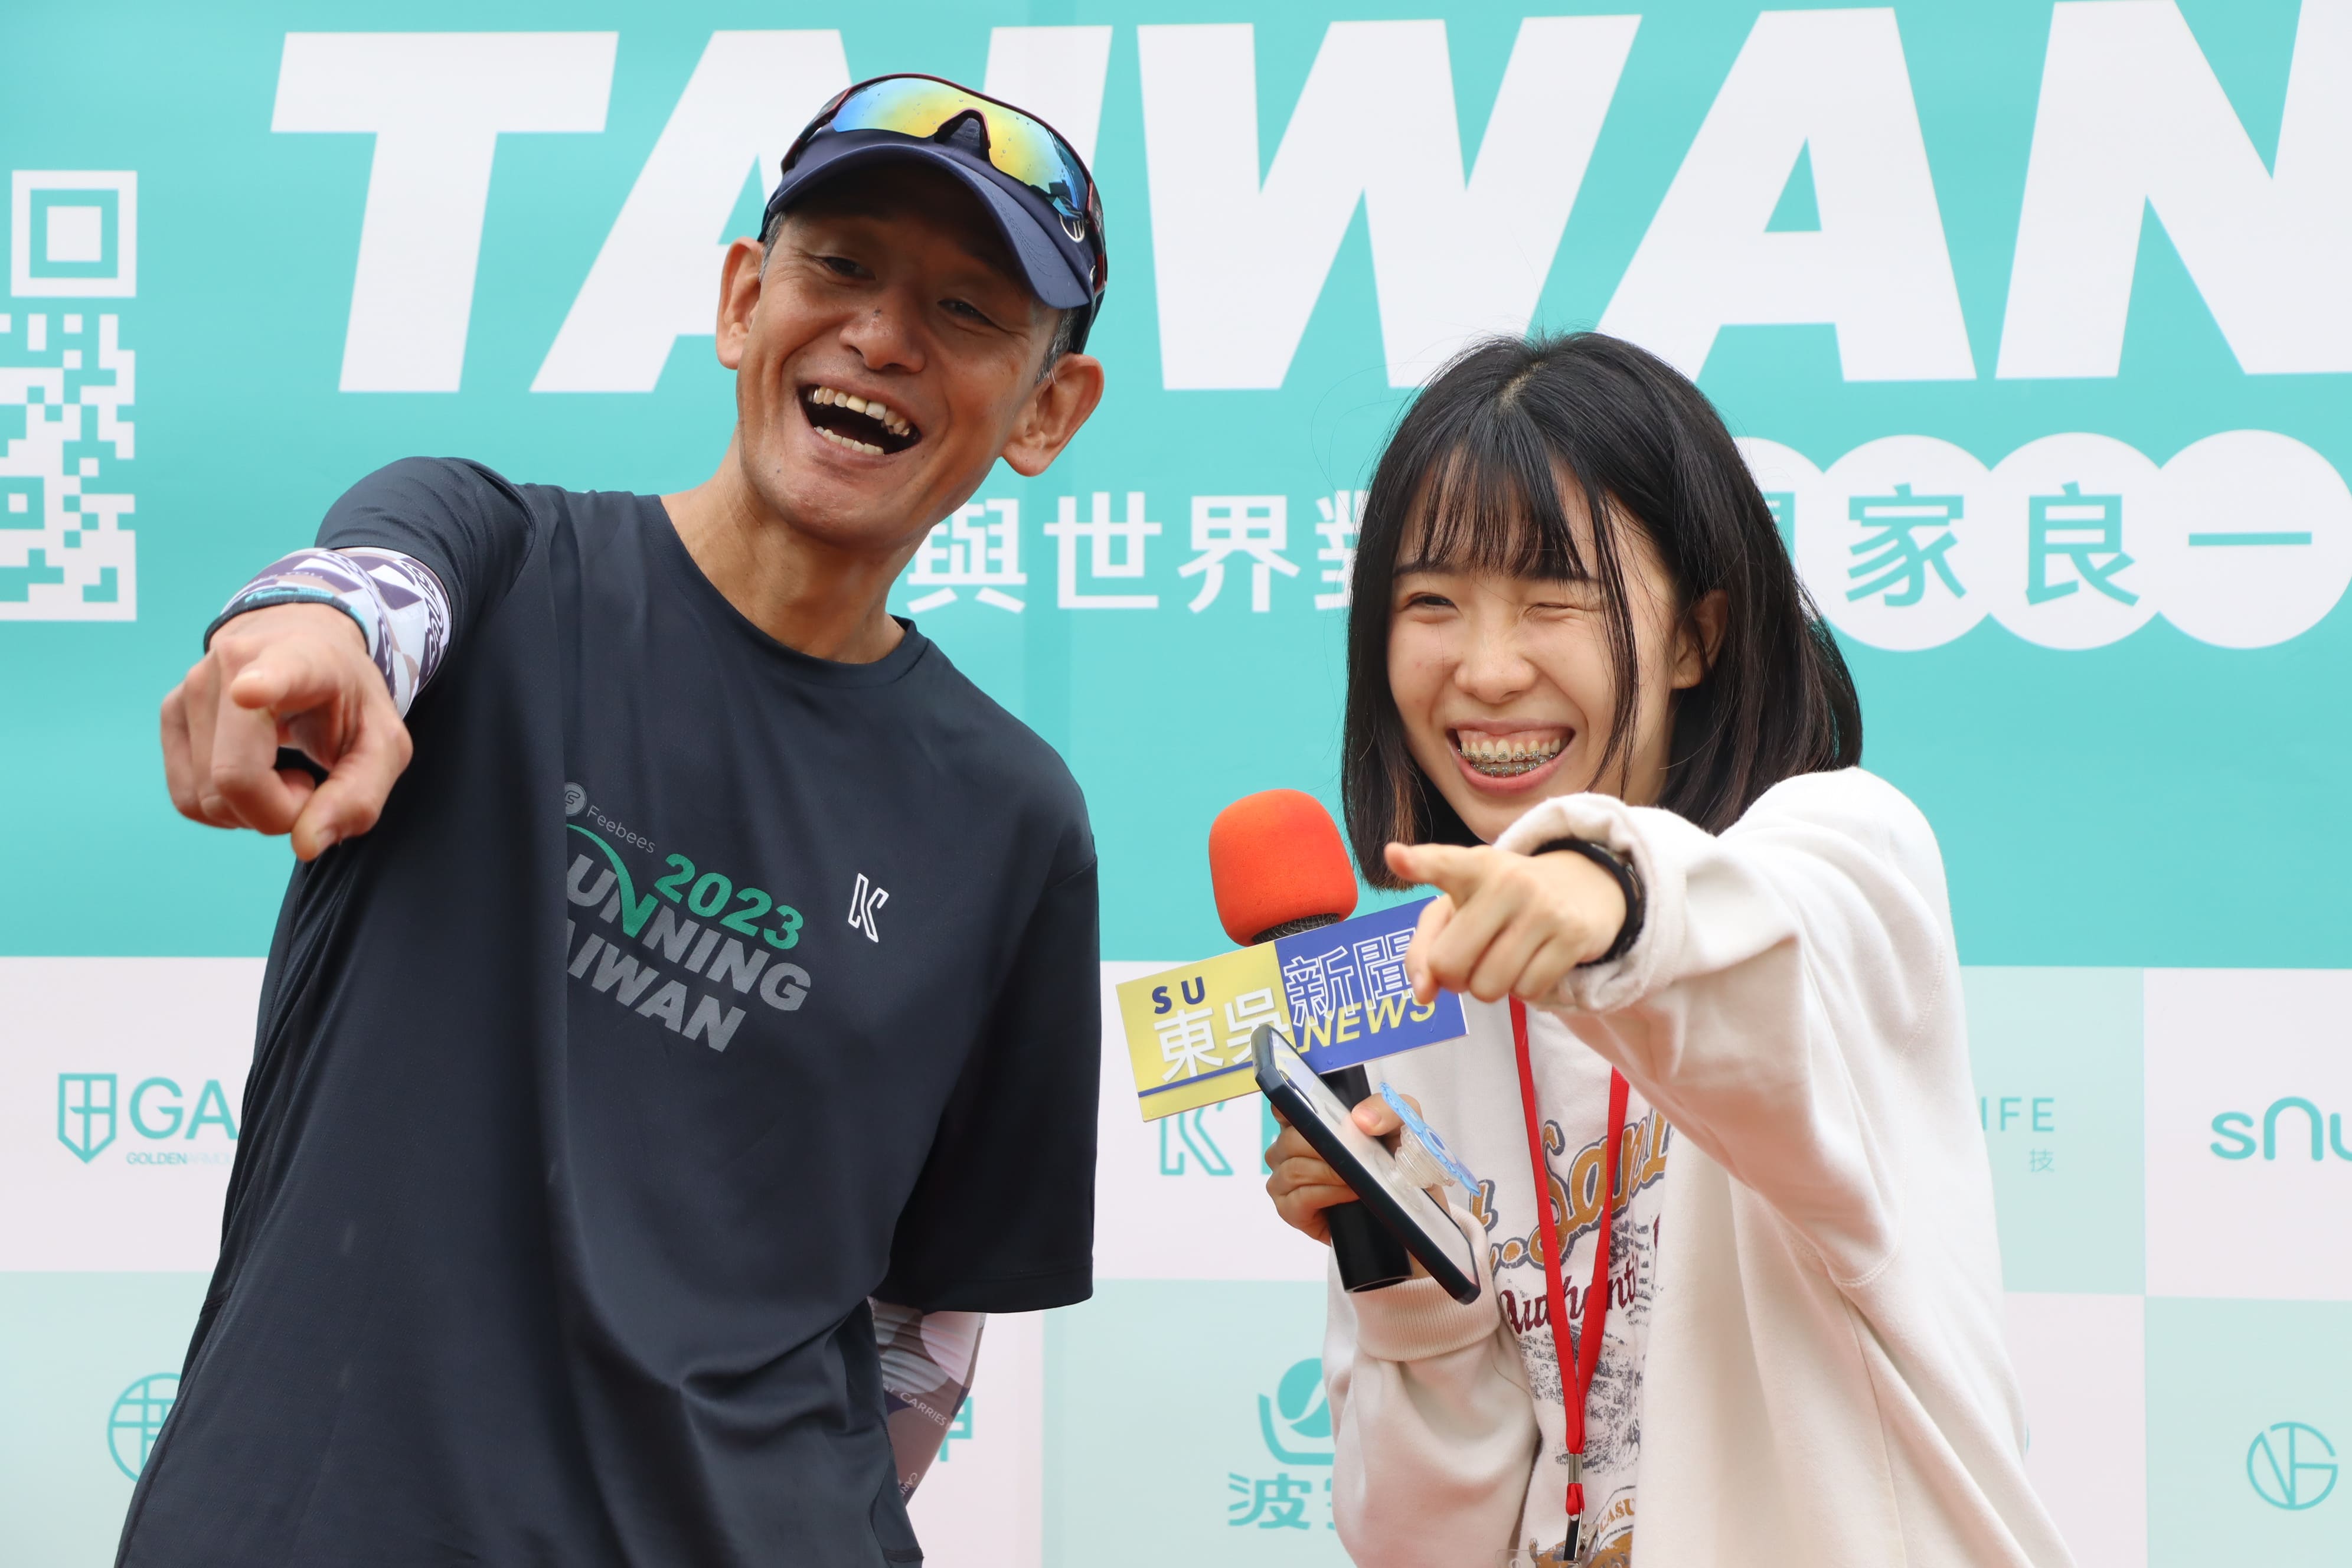 圖片標題:圖七、東吳校園記者採訪日本超馬選手關家良一，並俏皮合影.jpg